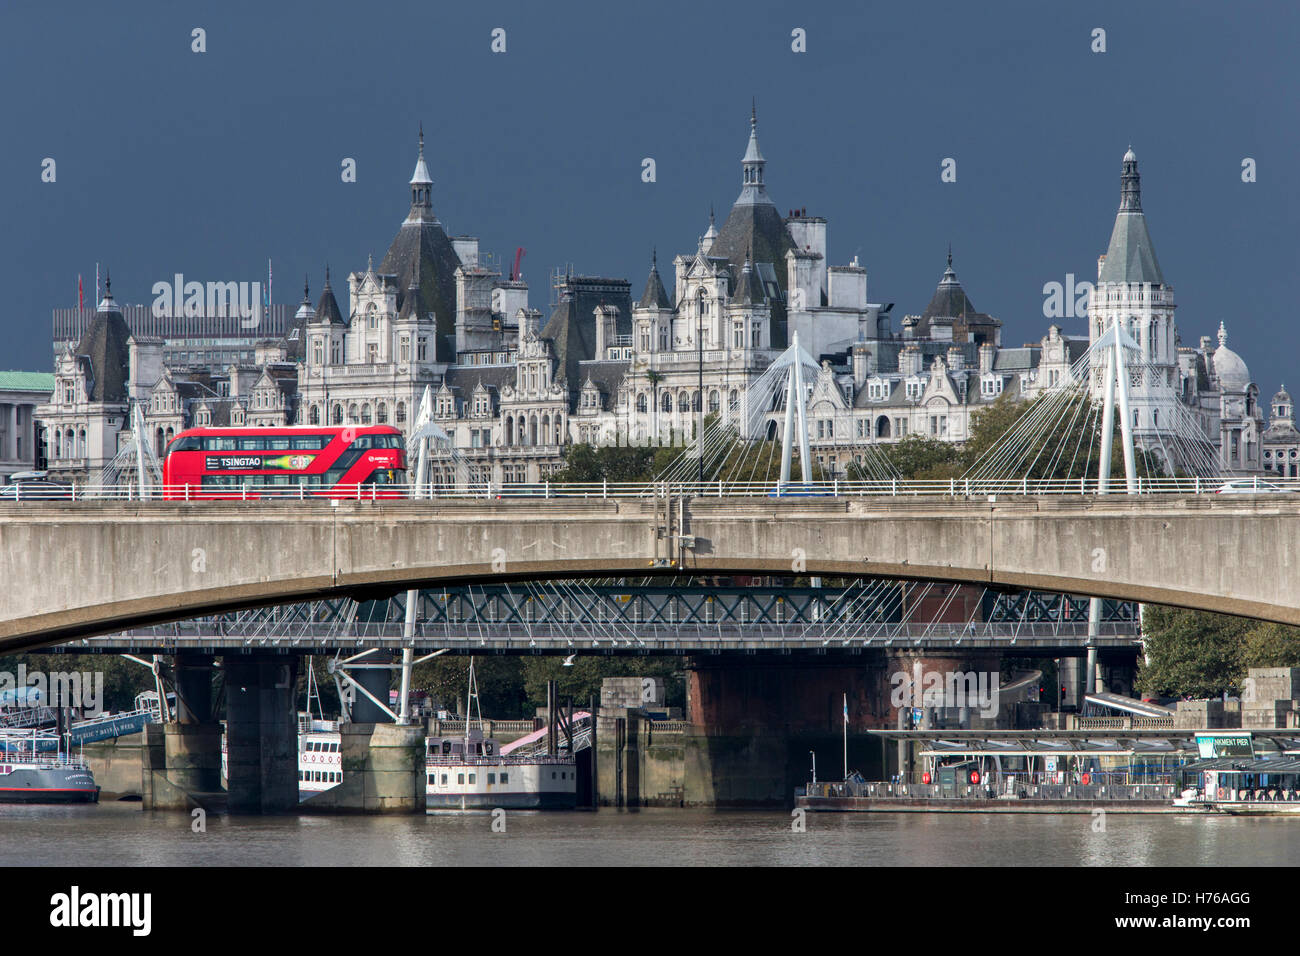 Waterloo Bridge, Londres, Angleterre, samedi, Octobre 01, 2016. Banque D'Images